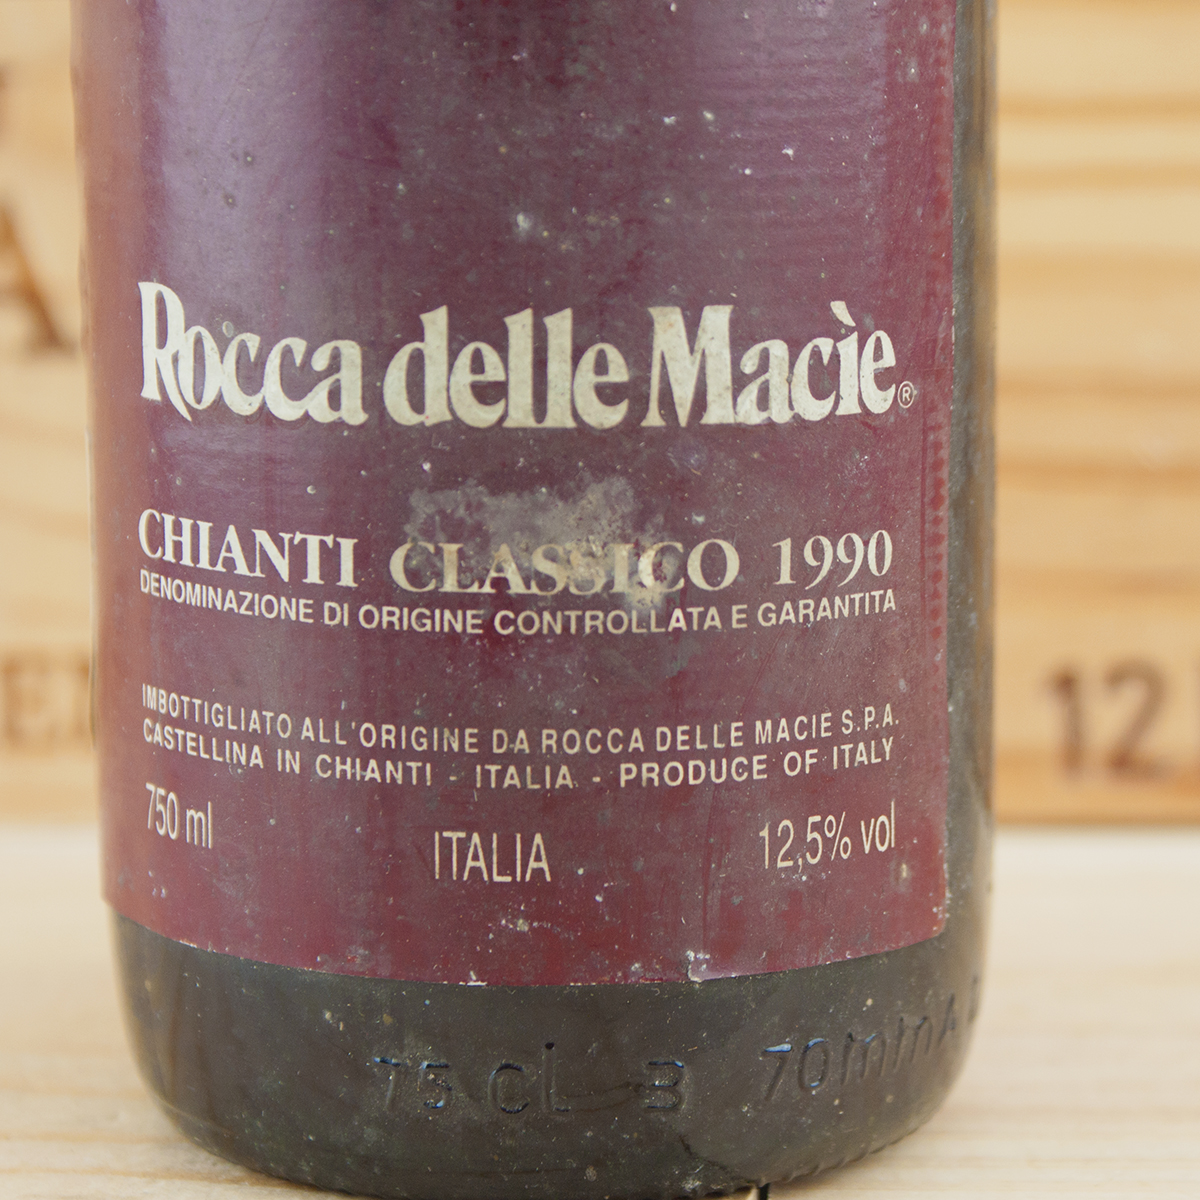 1990 Chianti Classico Rocca delle Macie